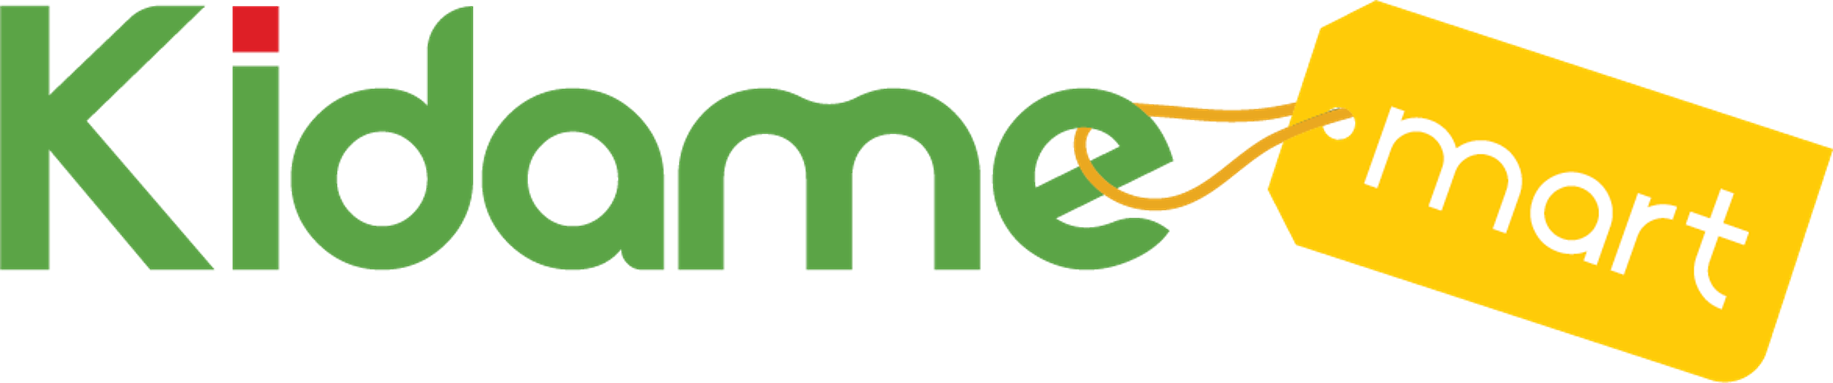 Kidame Mart logo